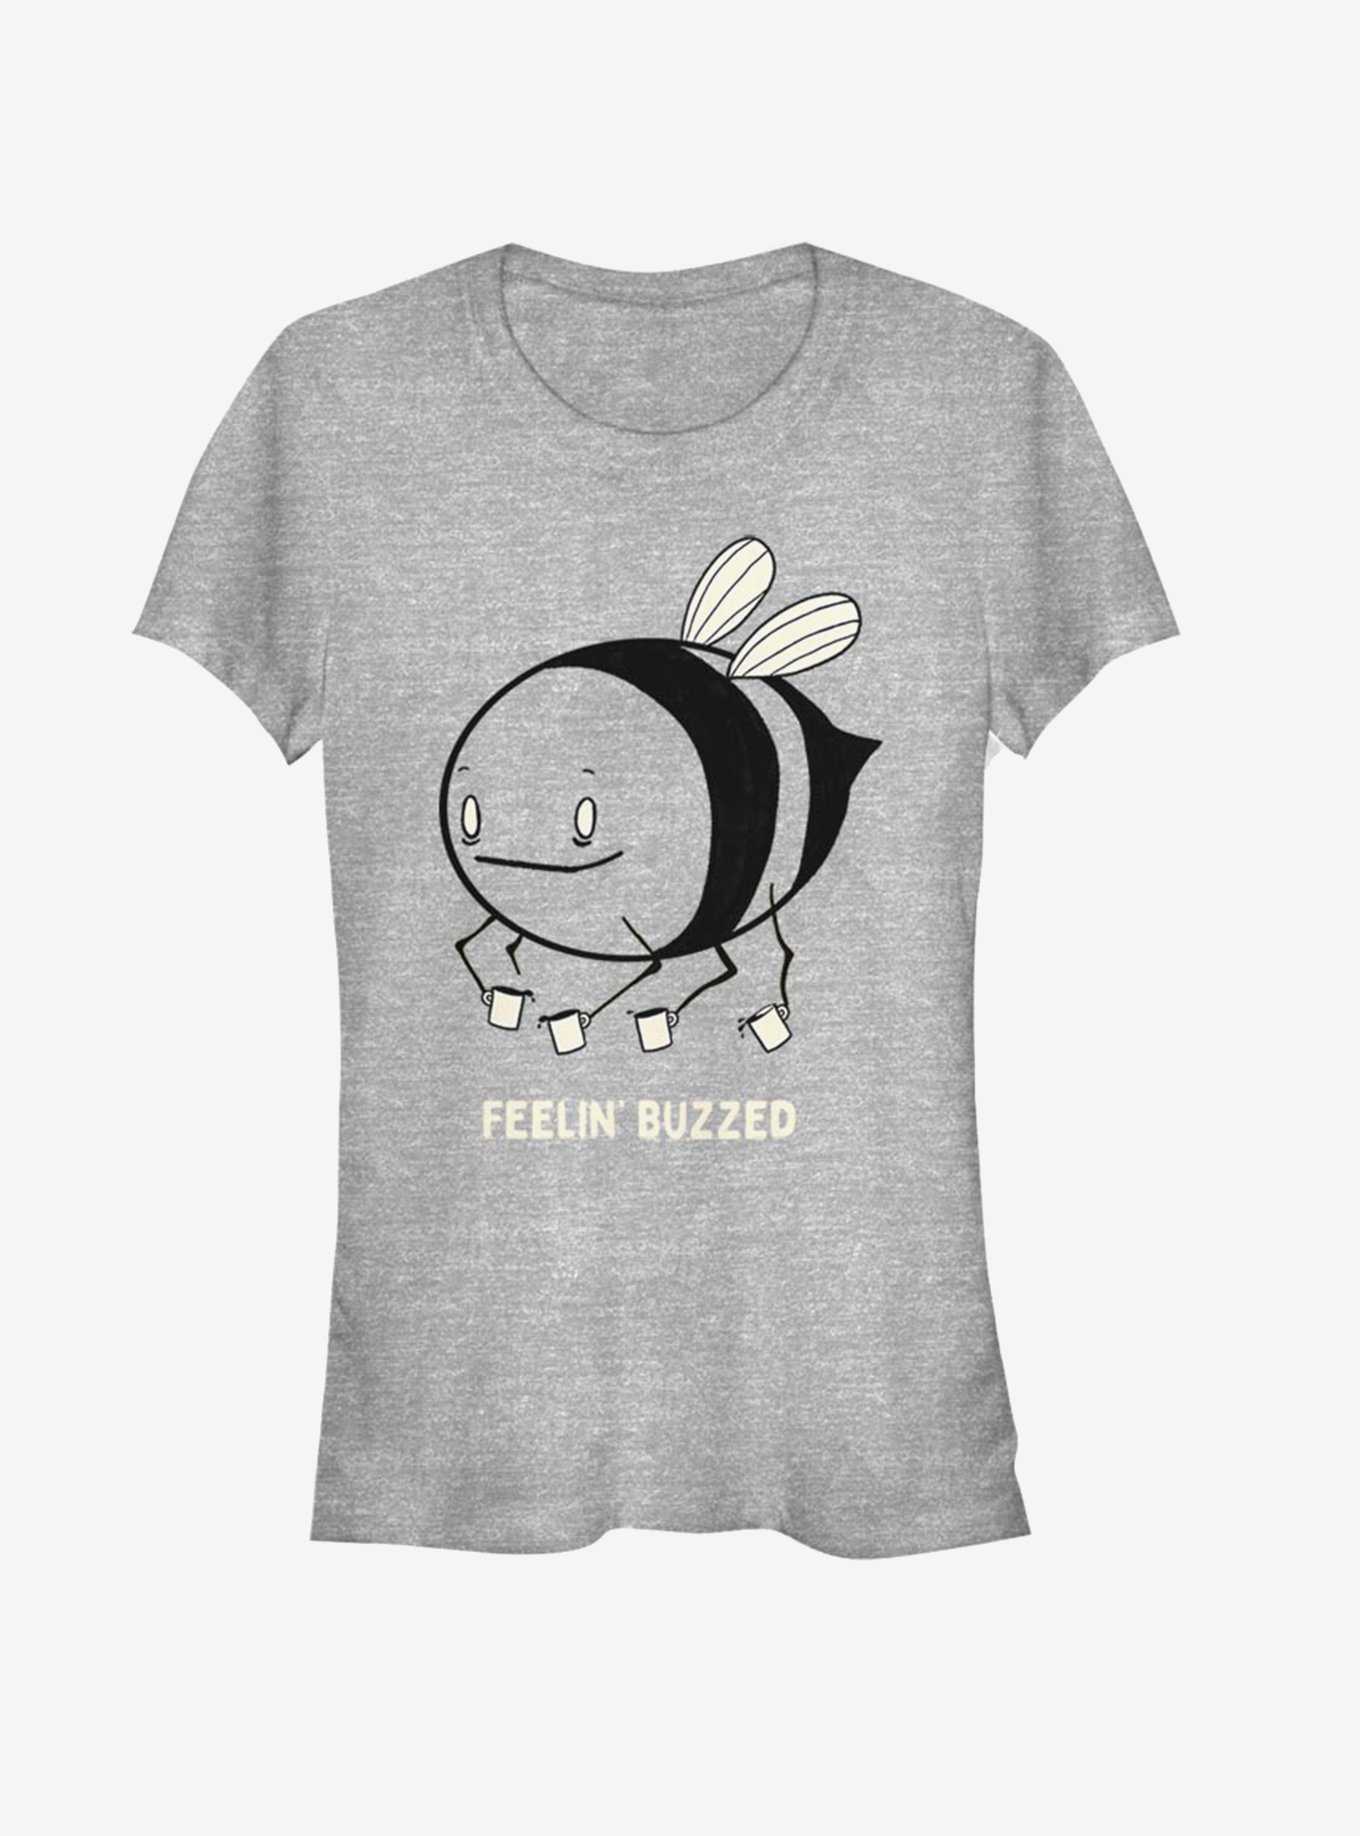 Feeling Buzzed Bee Girls T-Shirt, , hi-res